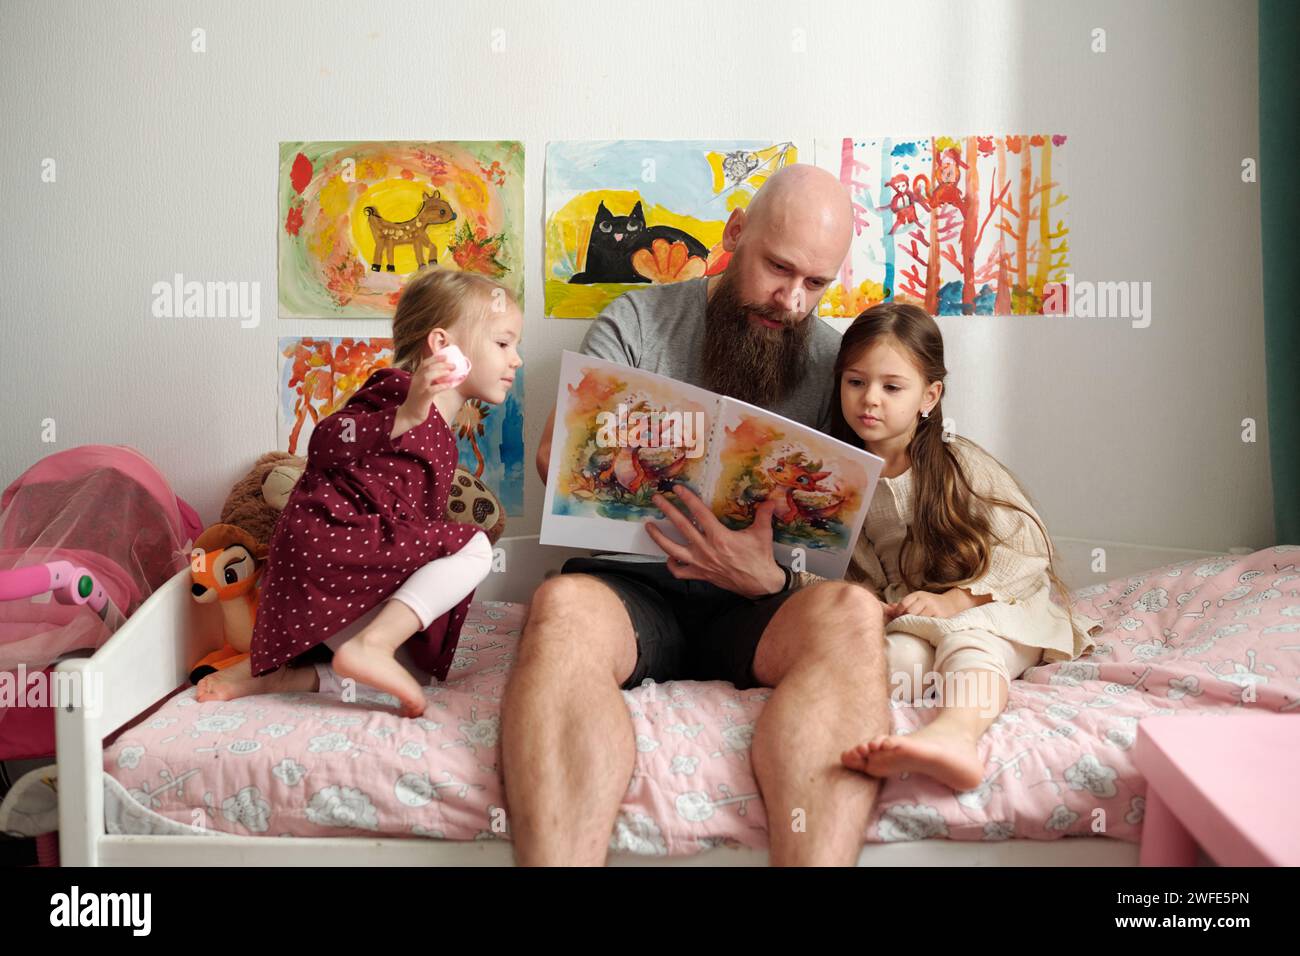 Bärtiger Mann mit einem Buch mit Comics, das Bilder einer seiner süßen kleinen Töchter zeigt, während er neben dem Mädchen in weißem Kleid auf dem Bett sitzt Stockfoto